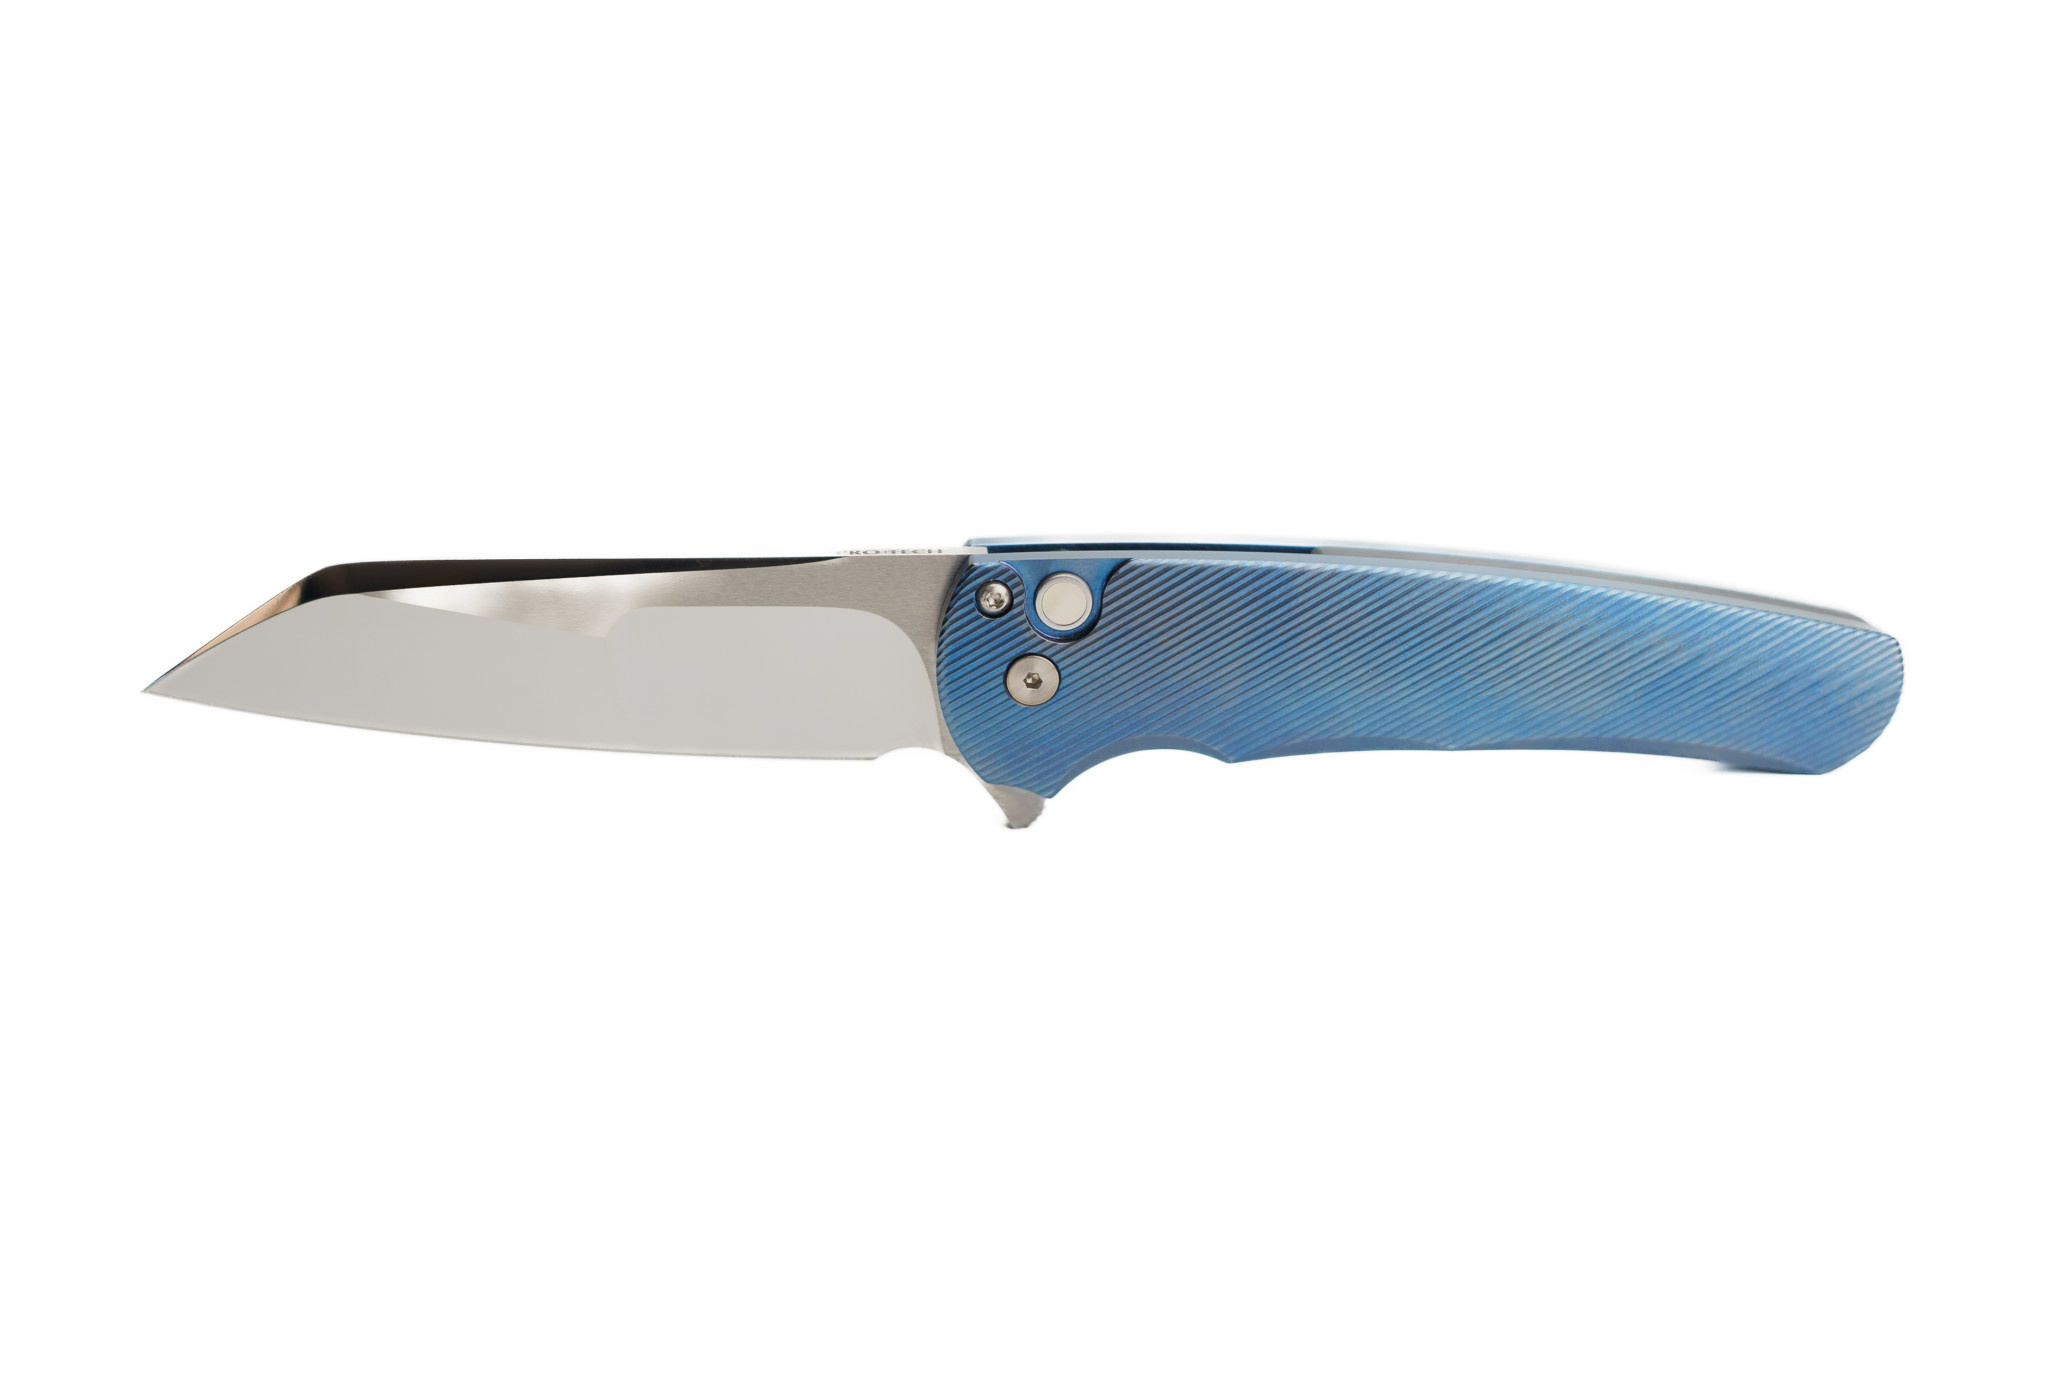 R&M International Bench Knife - 4 inch